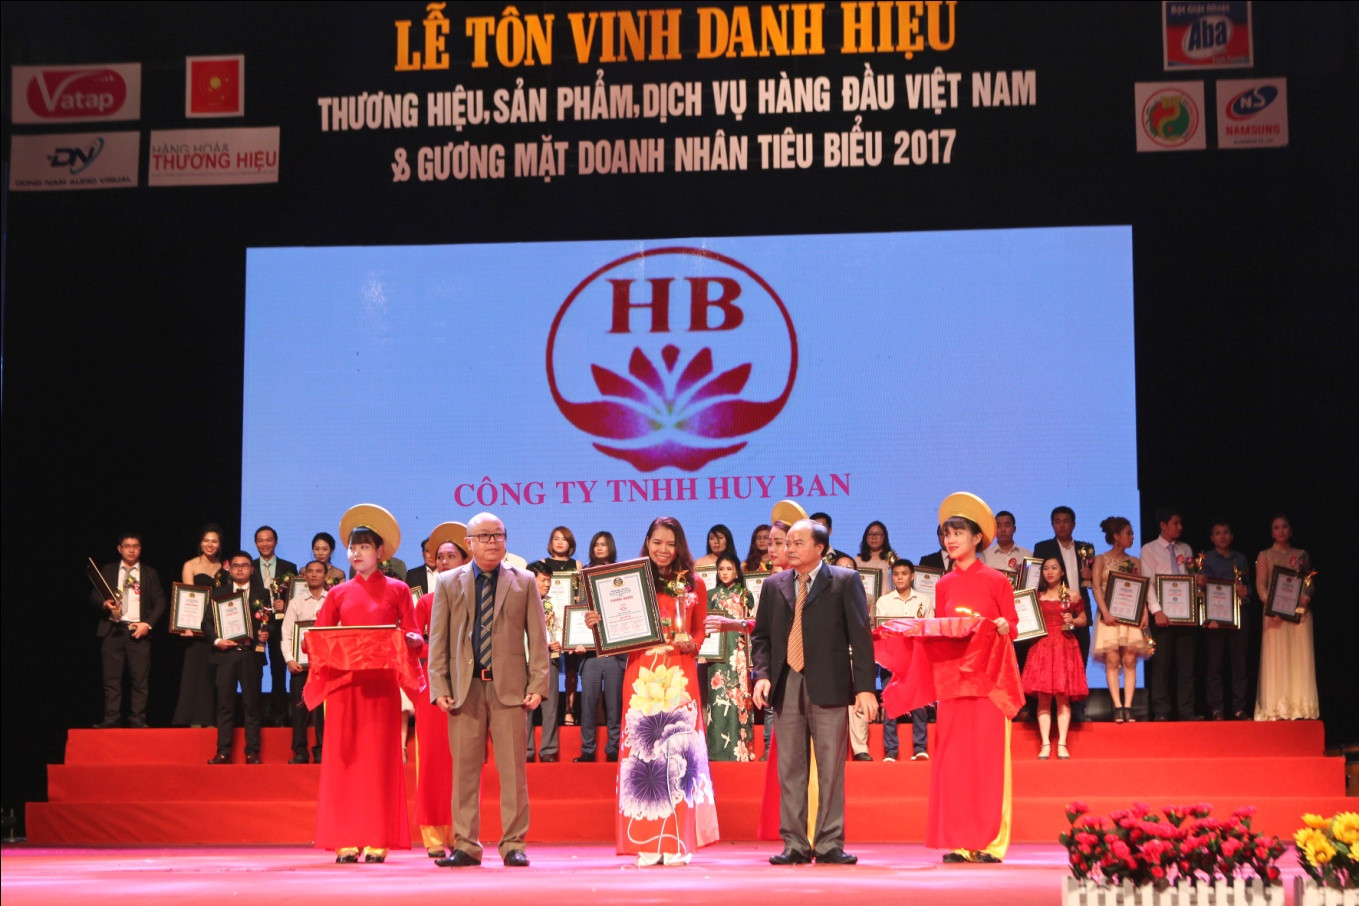 Thương hiệu diệu hoa và thành tích “Top 100 -Thương hiệu, sản phẩm dịch vụ hàng đầu Việt Nam” năm 2017